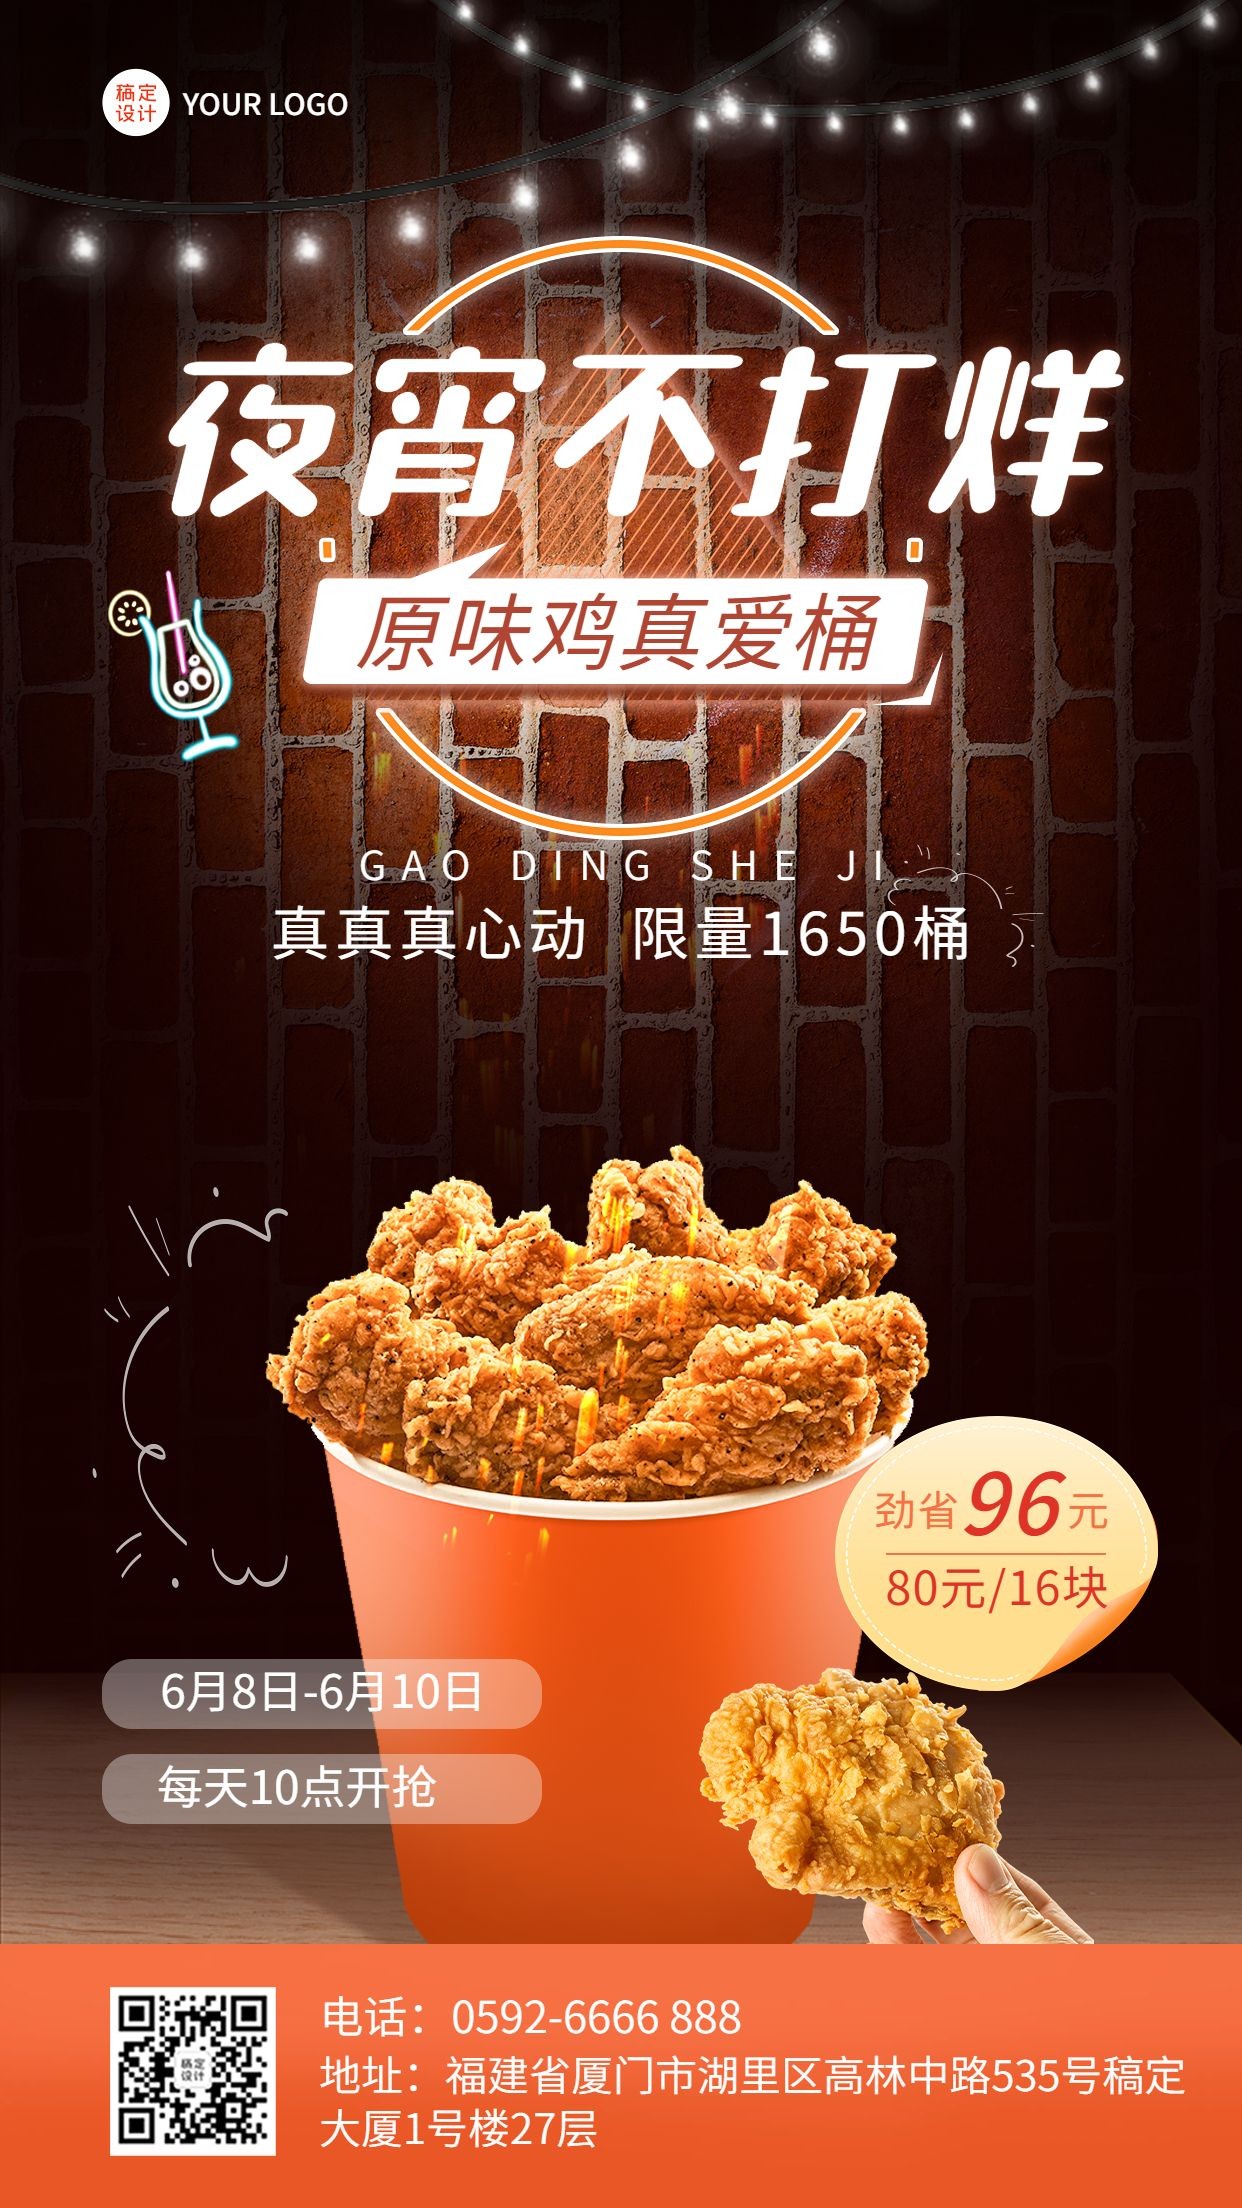 餐饮夏季营销炸鸡汉堡产品营销手机海报预览效果